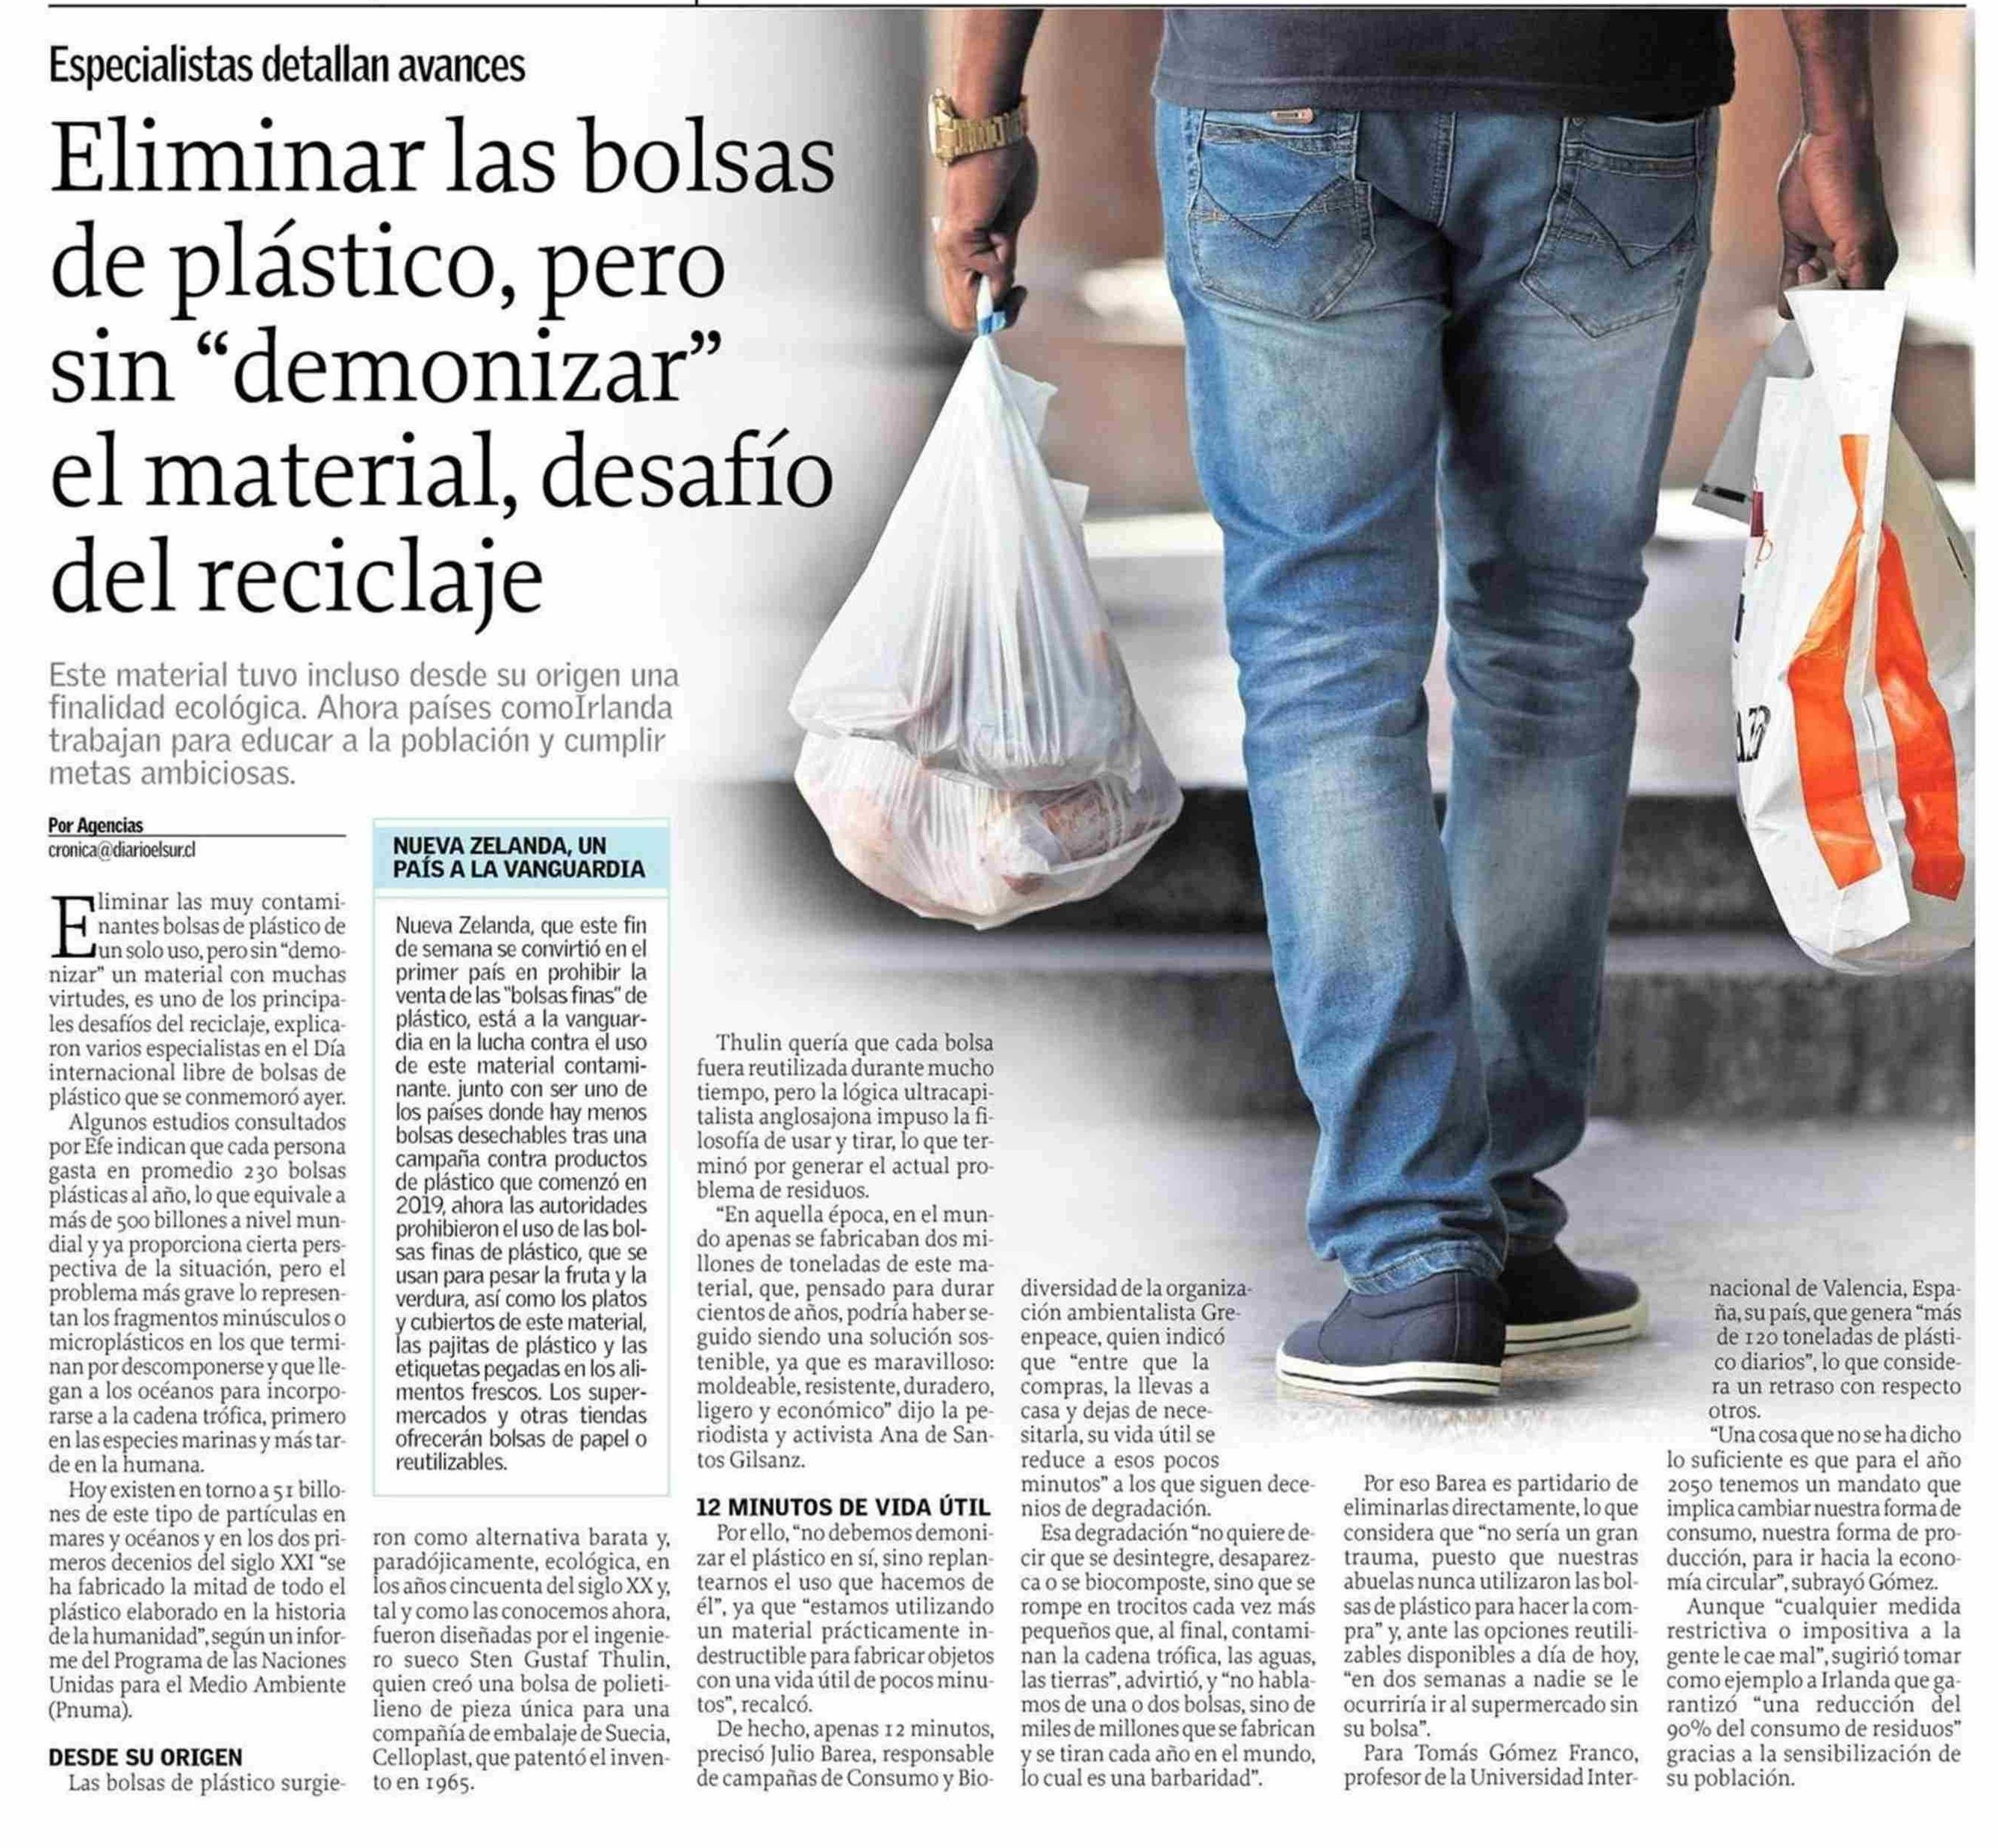 Reciclaje: eliminar bolsas de plástico, sin 'demonizar' el material